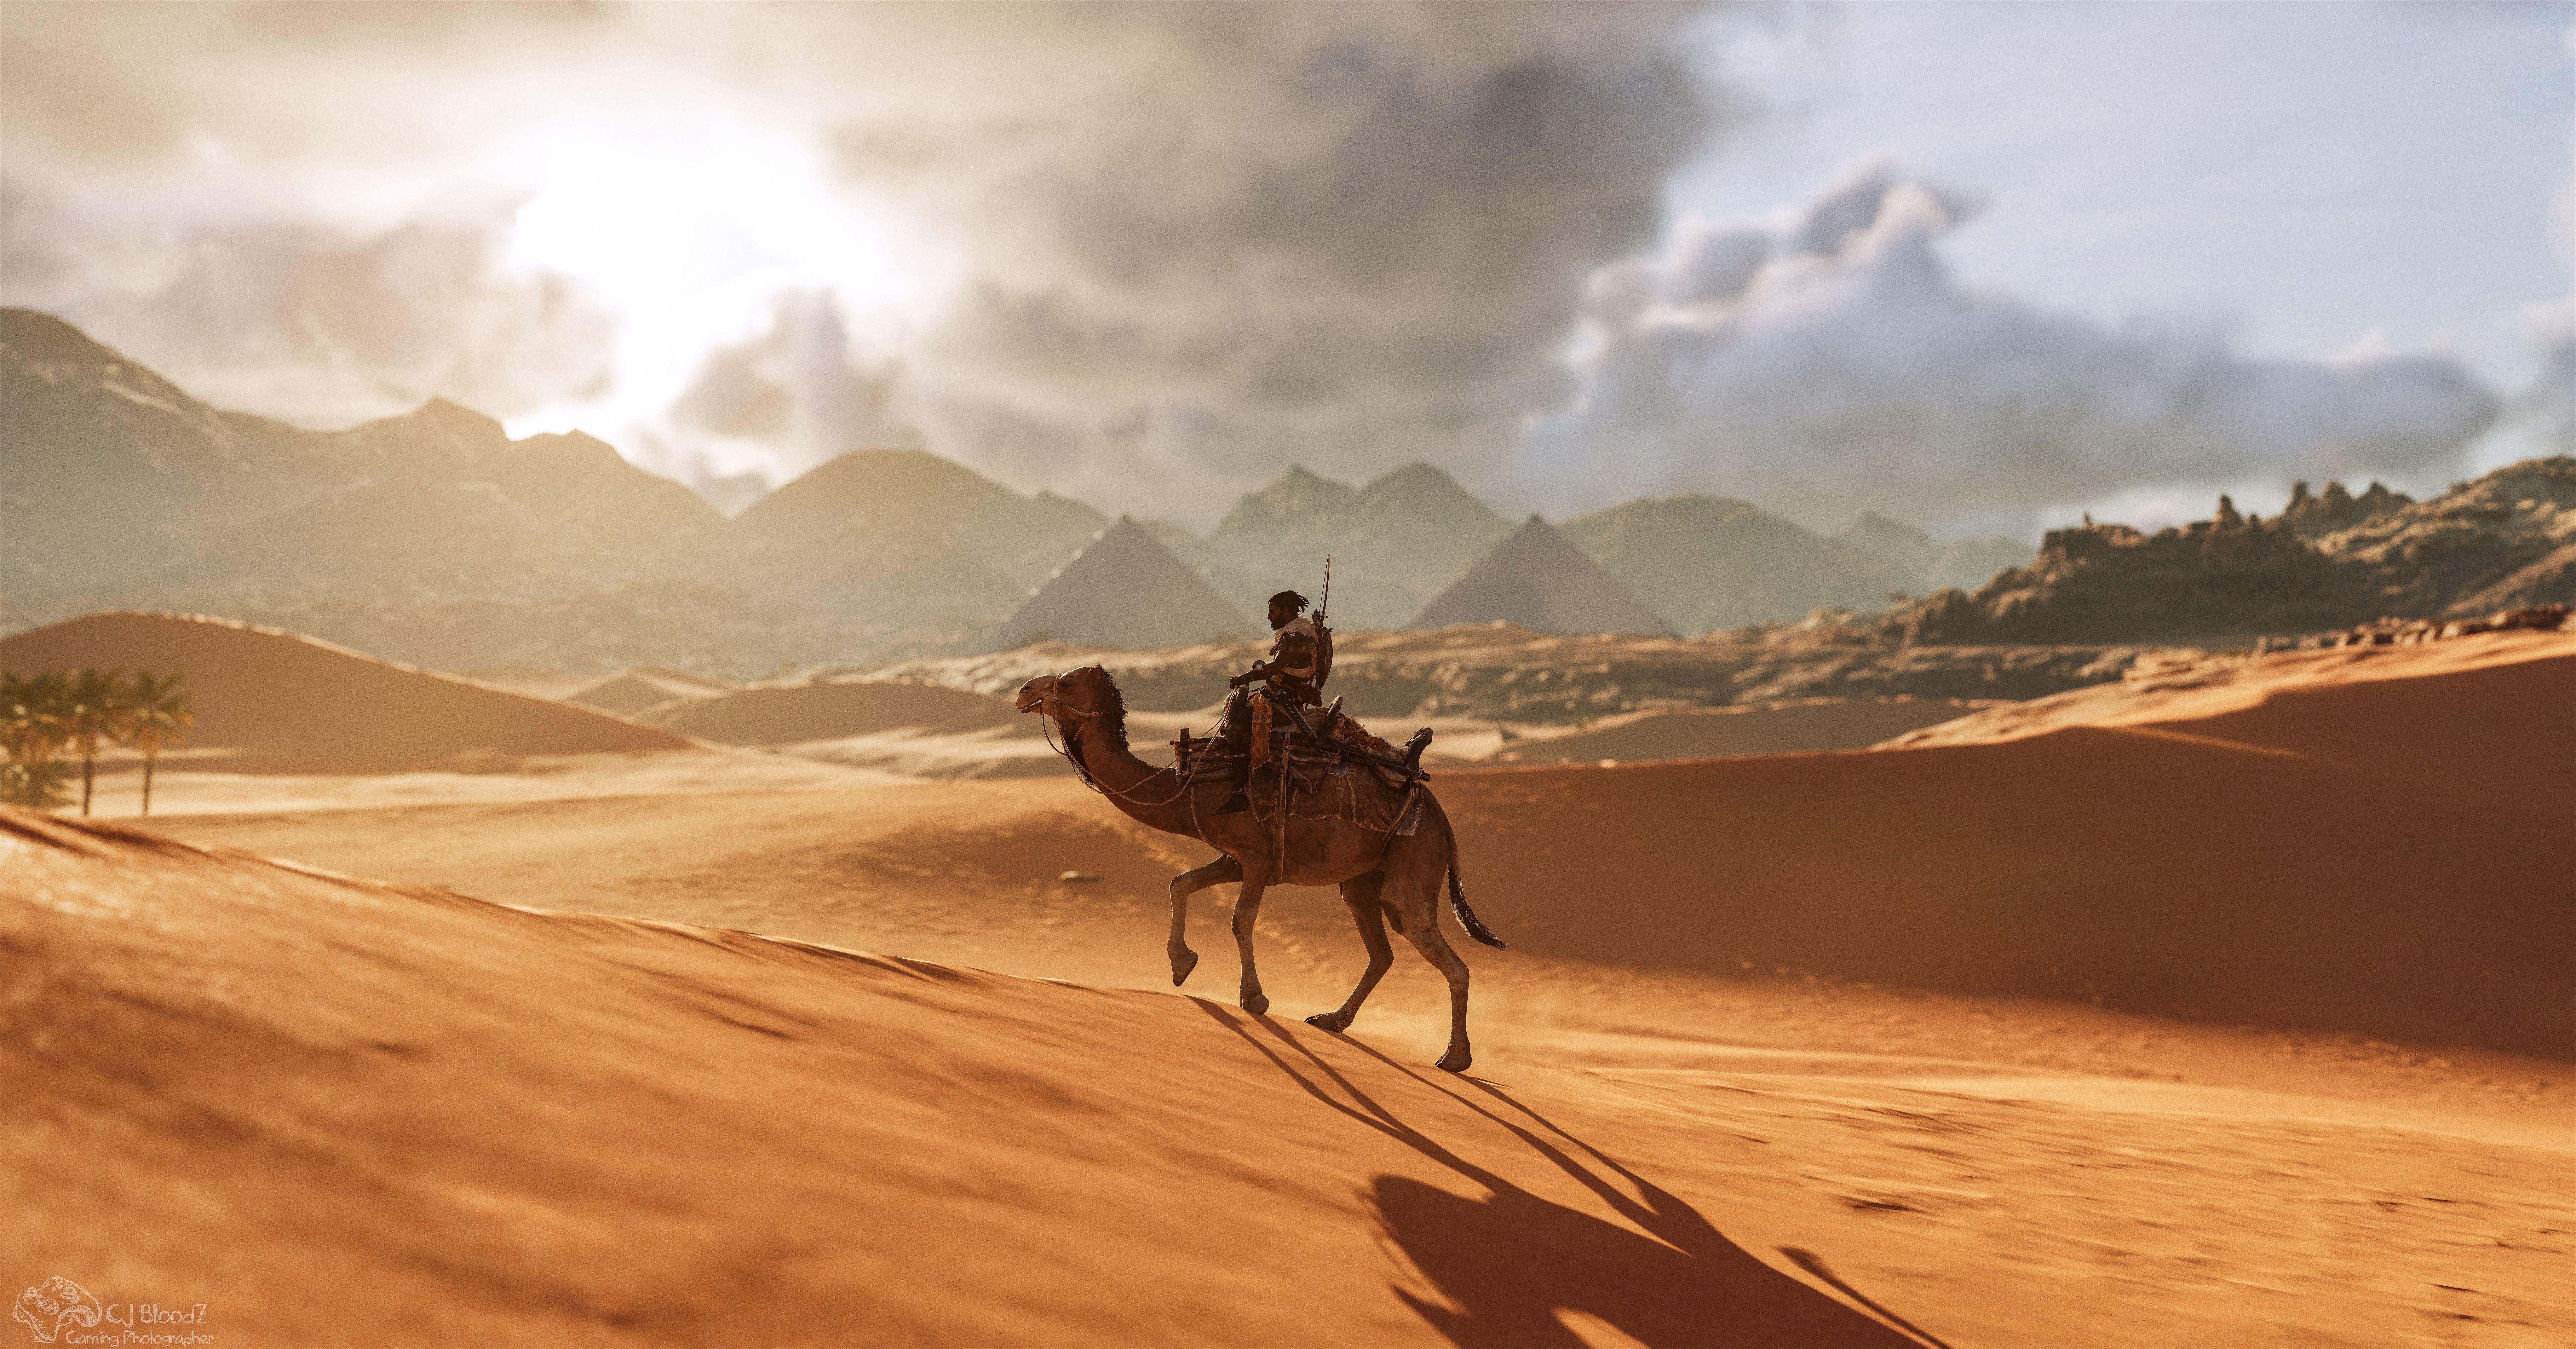 8176x4281 Camel Assassins Creed Origins 8k، HD Games، 4k Wallpaper